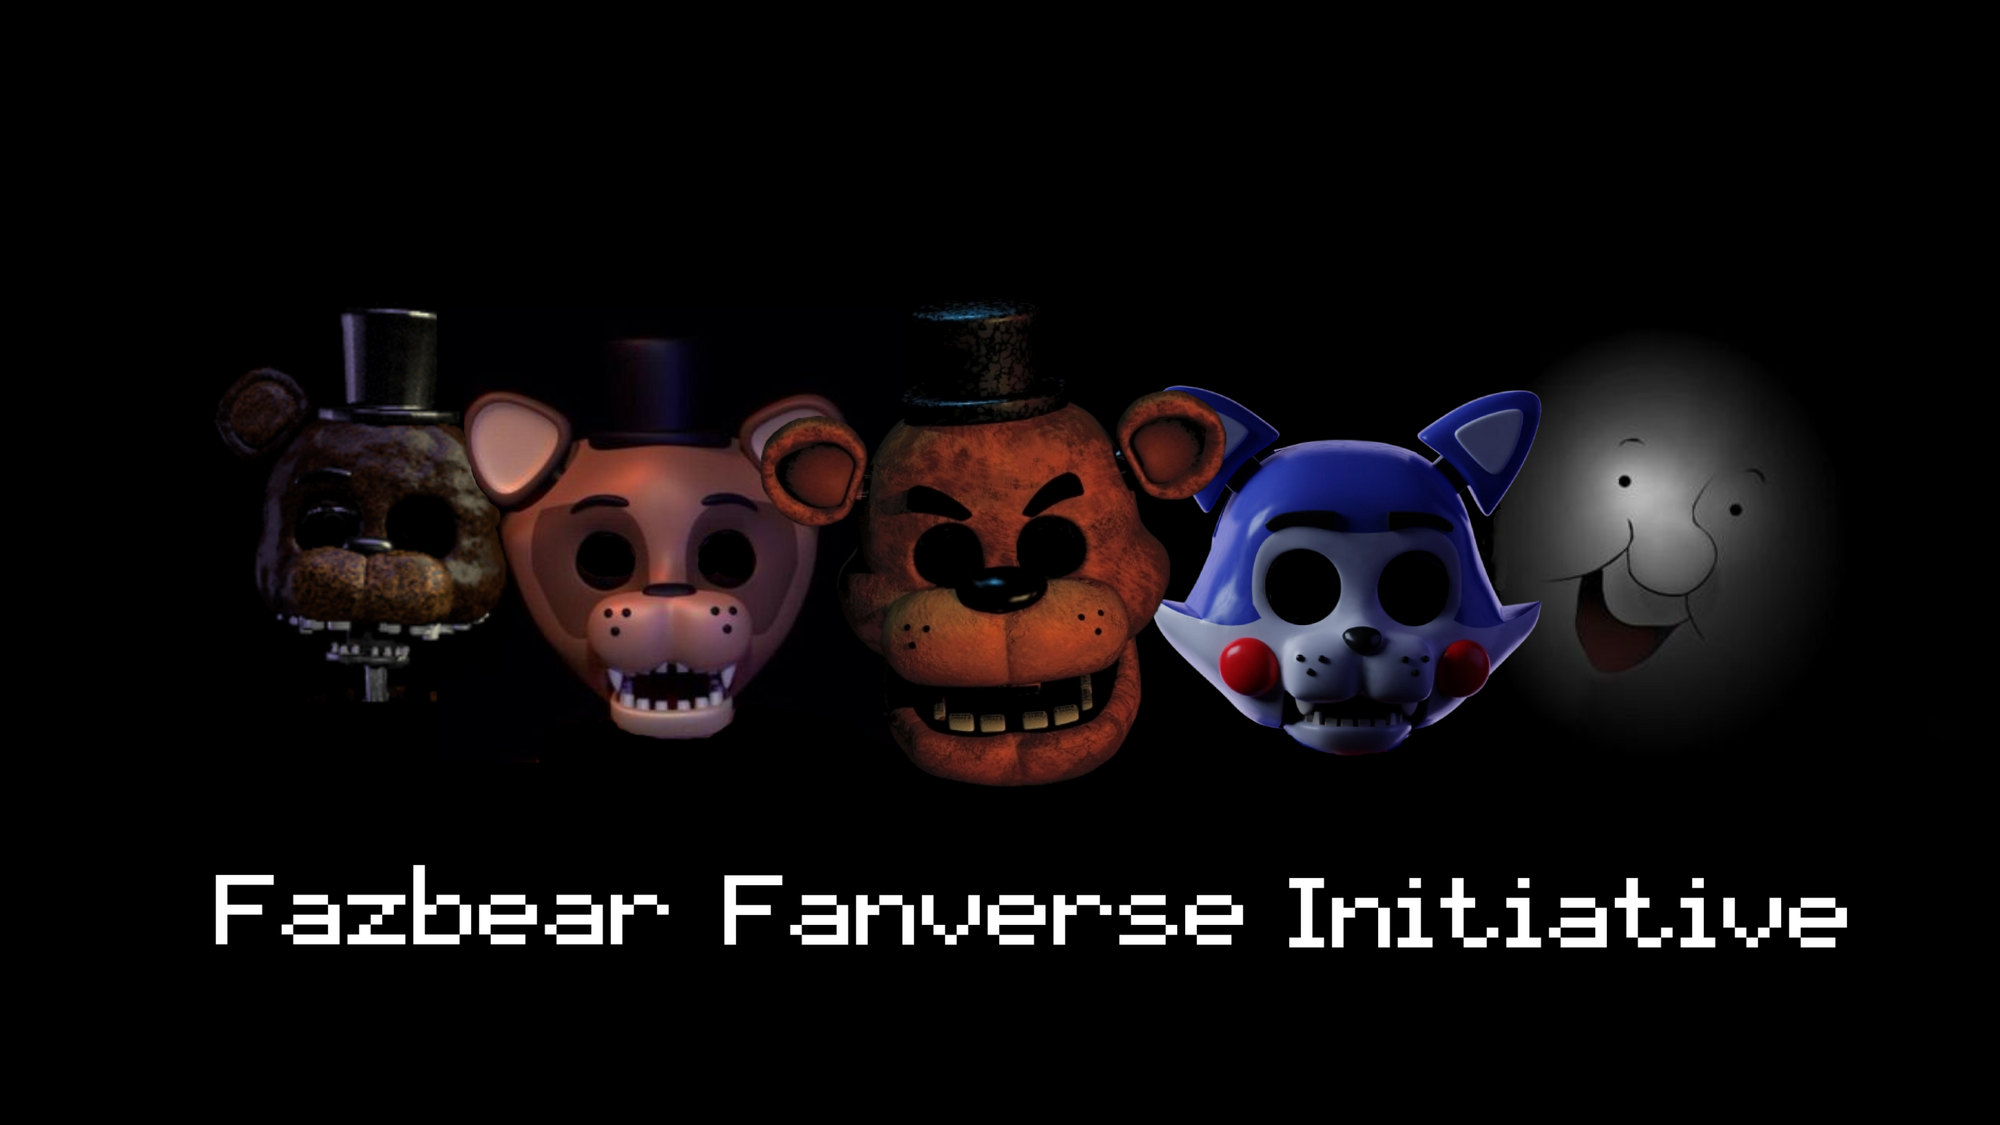 Fnaf fanverse. Fazbear Fanverse initiative. Fazbears Fanverse. The Fazbear Fanverse initiative книга.